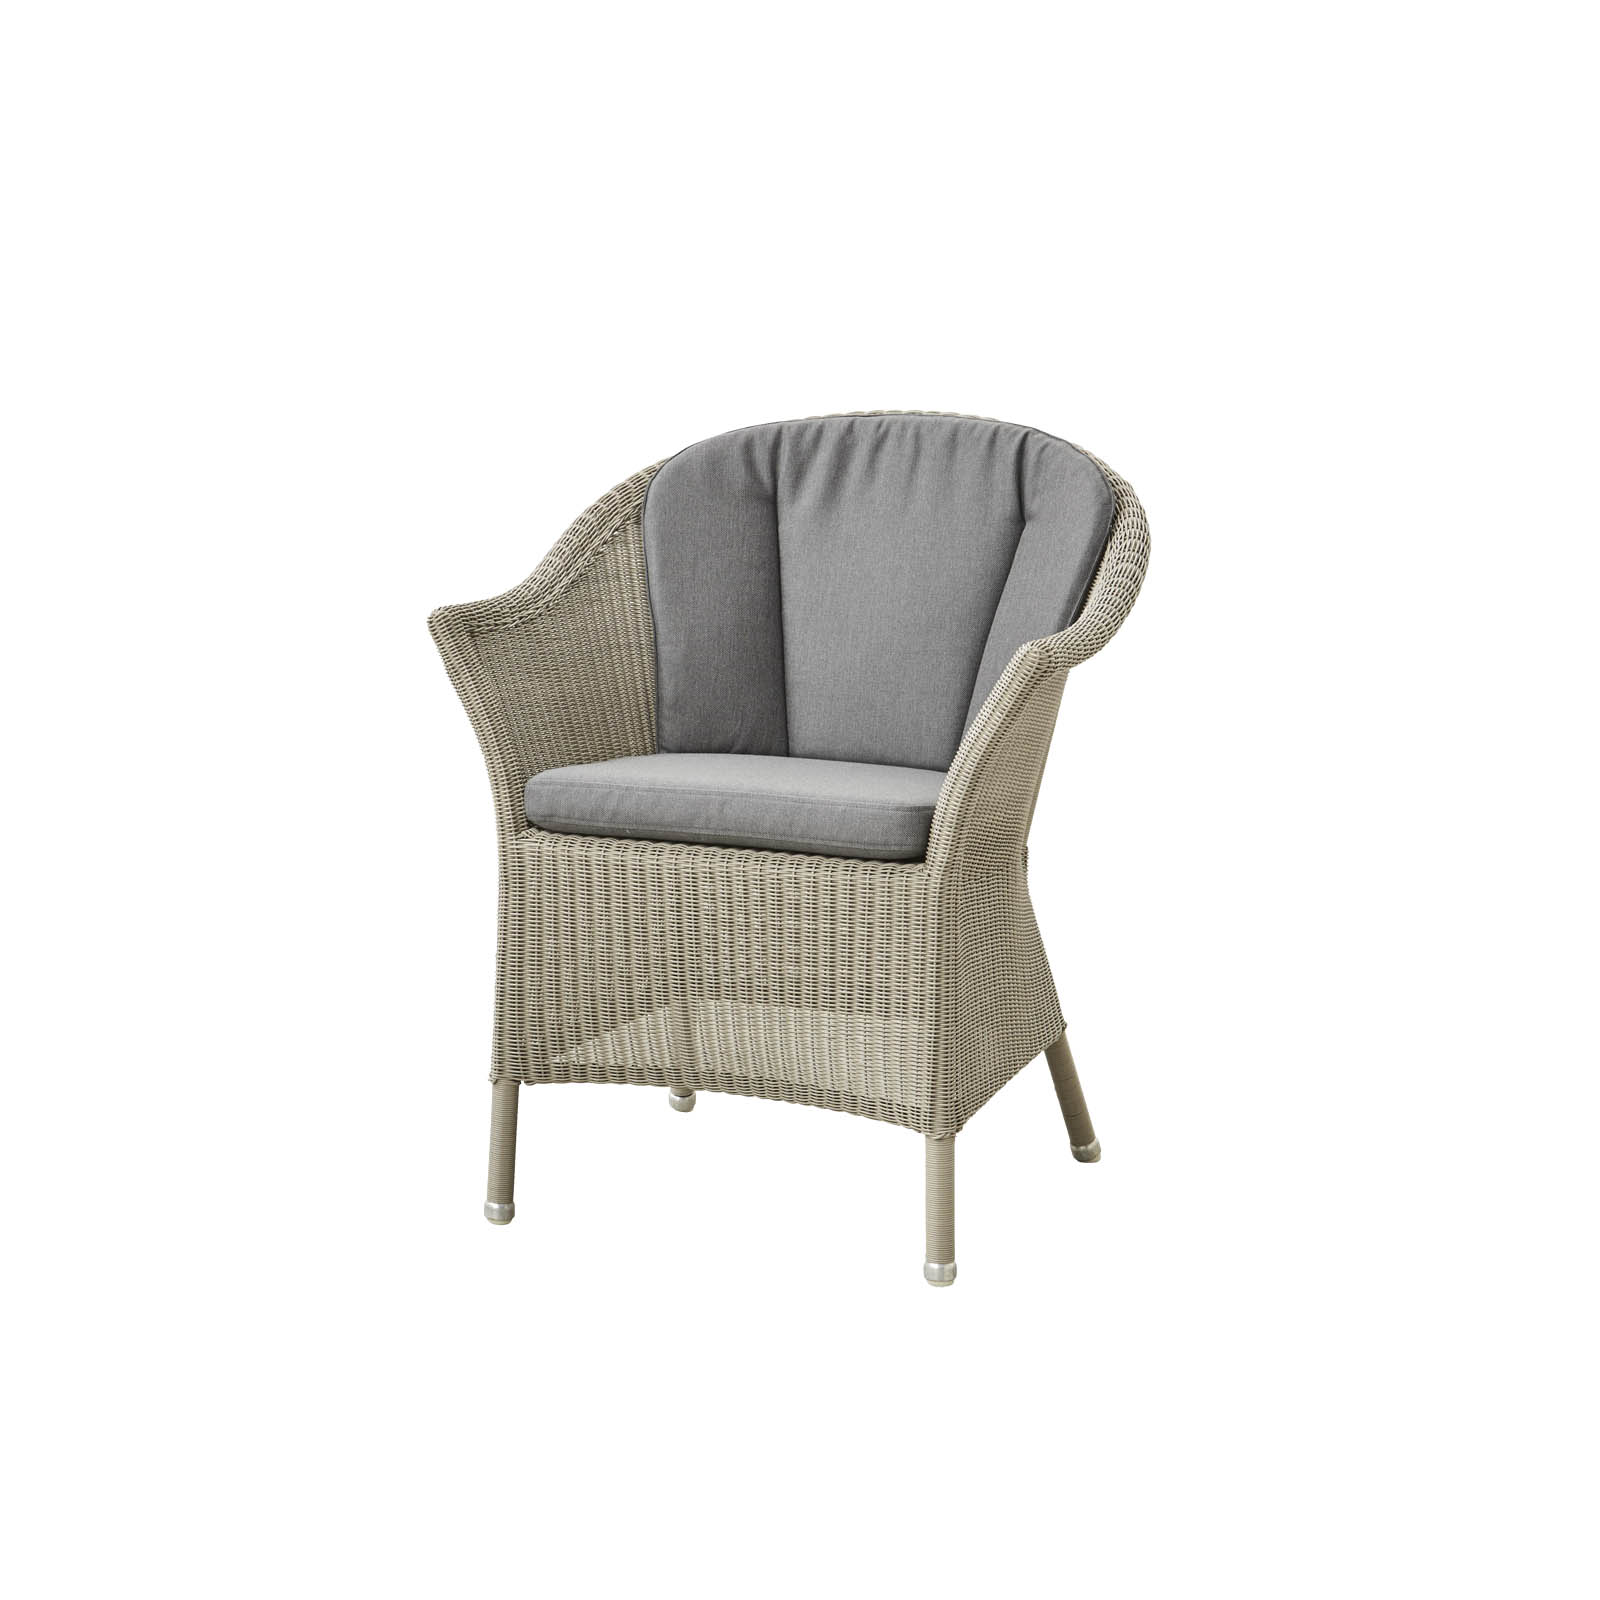 Lansing Stuhl aus Cane-line Weave in Taupe mit Kissen aus Cane-line Natté in Grey und Kissen aus Cane-line Natté in Grey